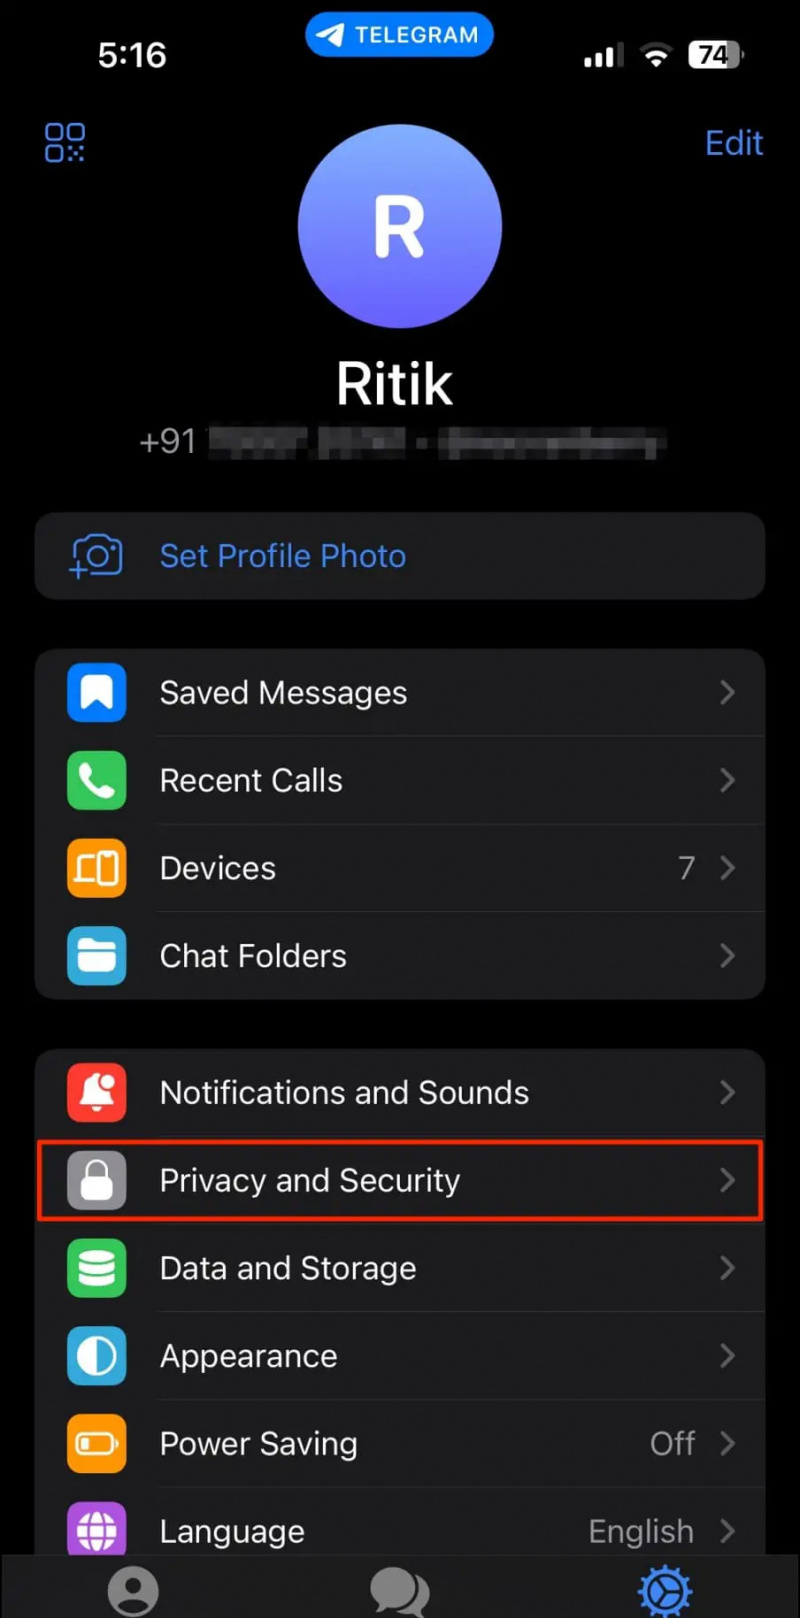   Bloqueja l'aplicació Telegram a l'iPhone